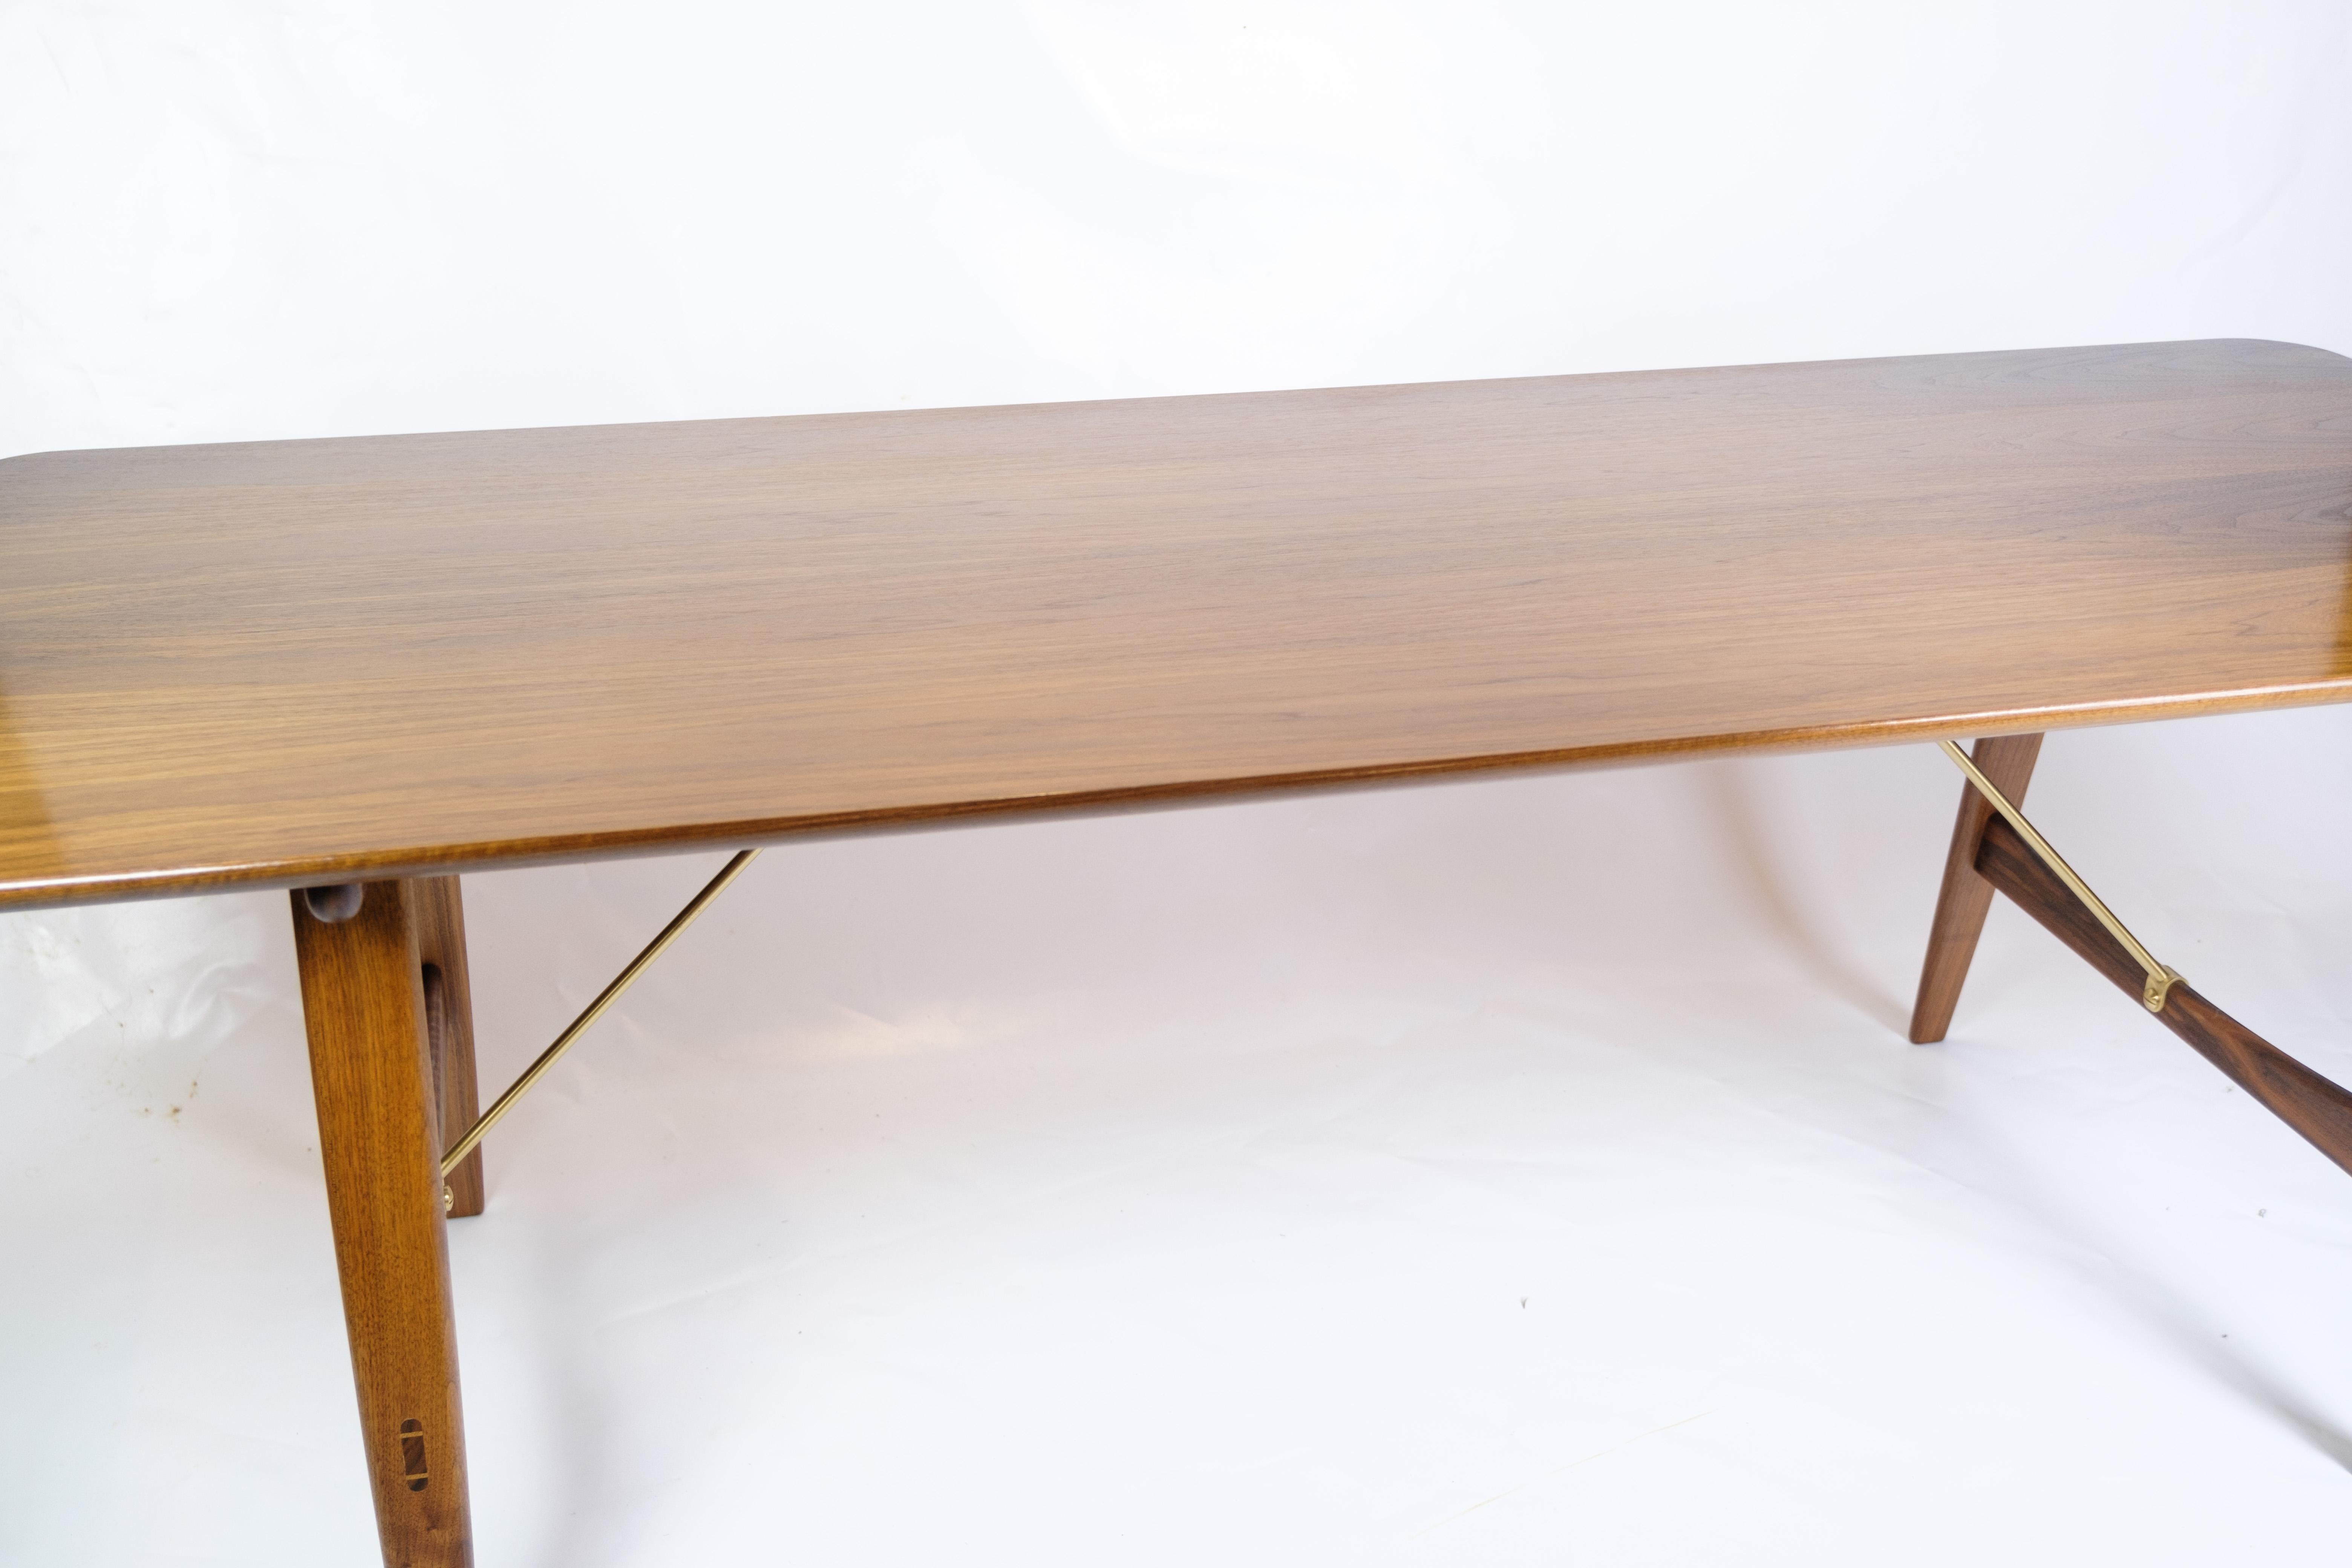 La table de chasse, connue sous le nom de modèle BM1160, est un splendide exemple de l'esthétique unique de Børge Mogensen. Fabriquée en bois de noyer et soutenue par des traverses en laiton, cette table respire l'élégance et la